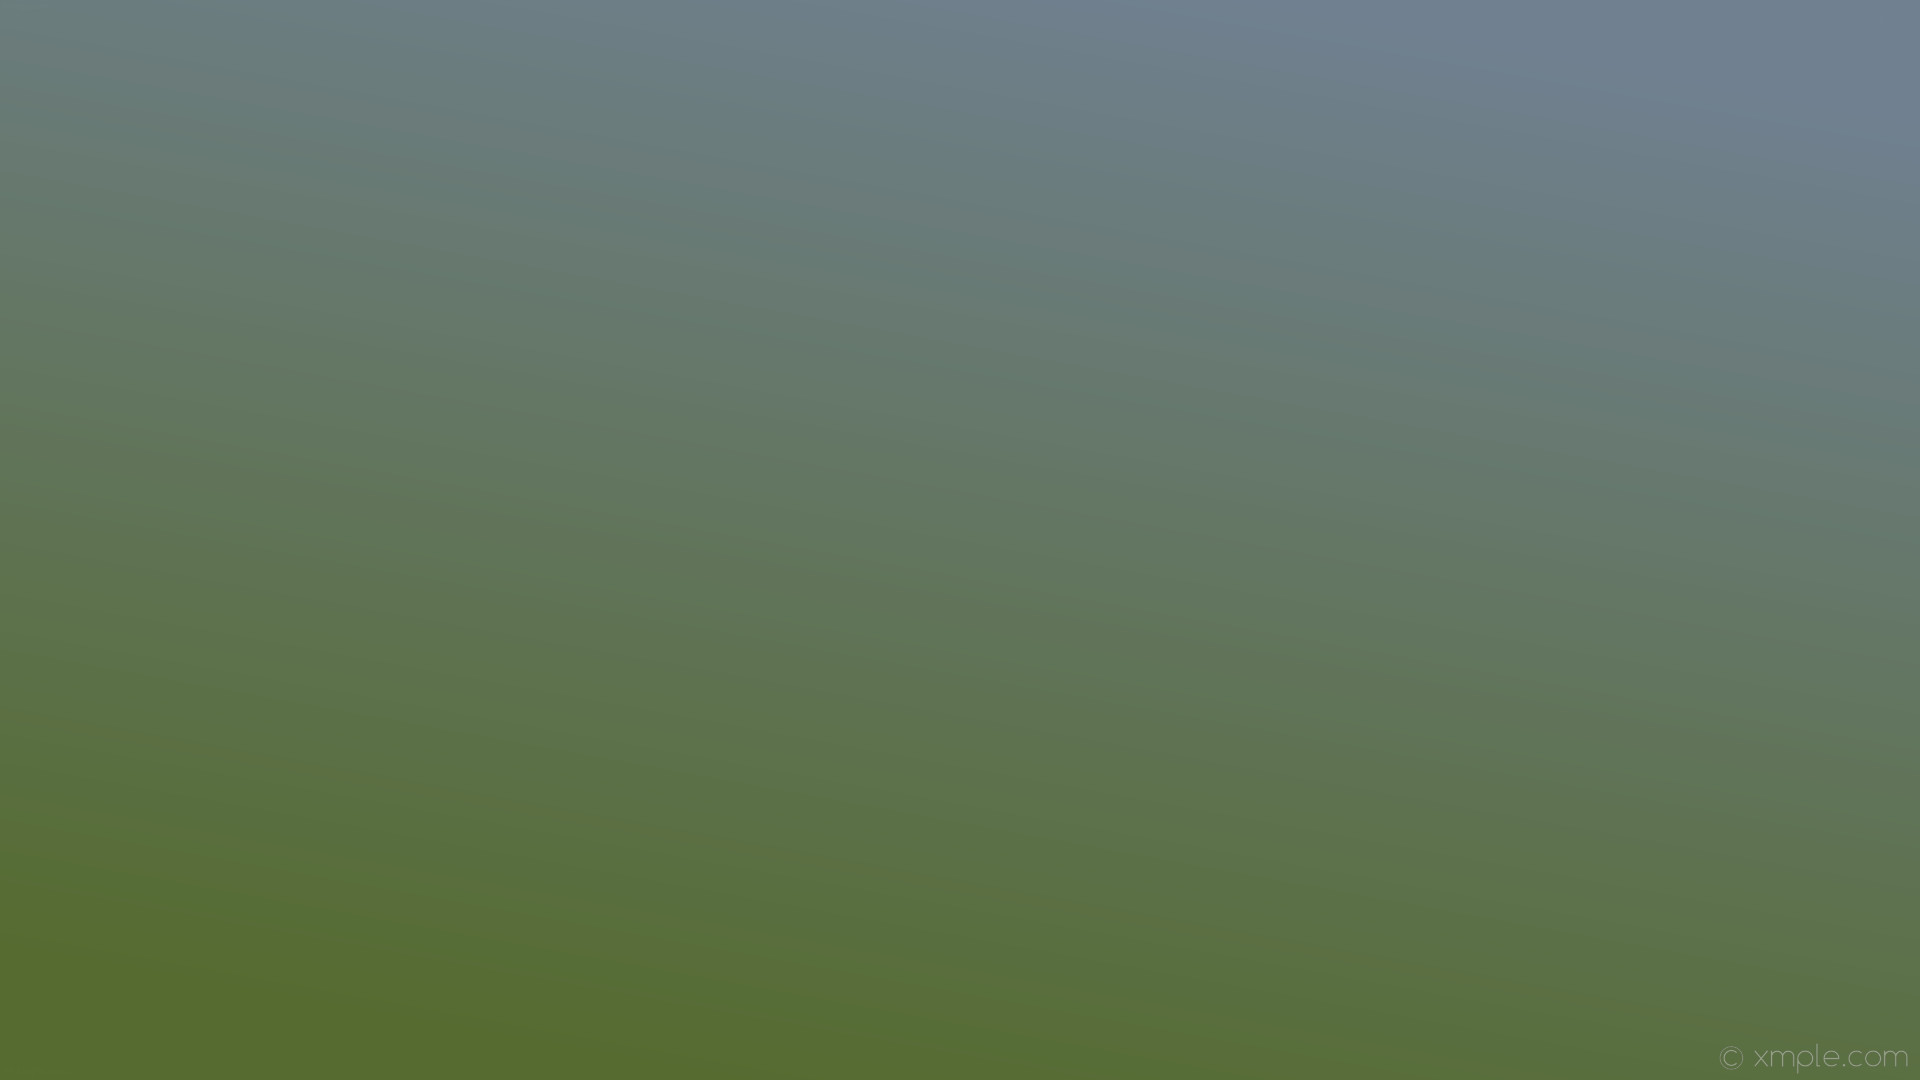 1920x1080 wallpaper green gradient grey linear slate gray dark olive green #708090  #556b2f 60Â°